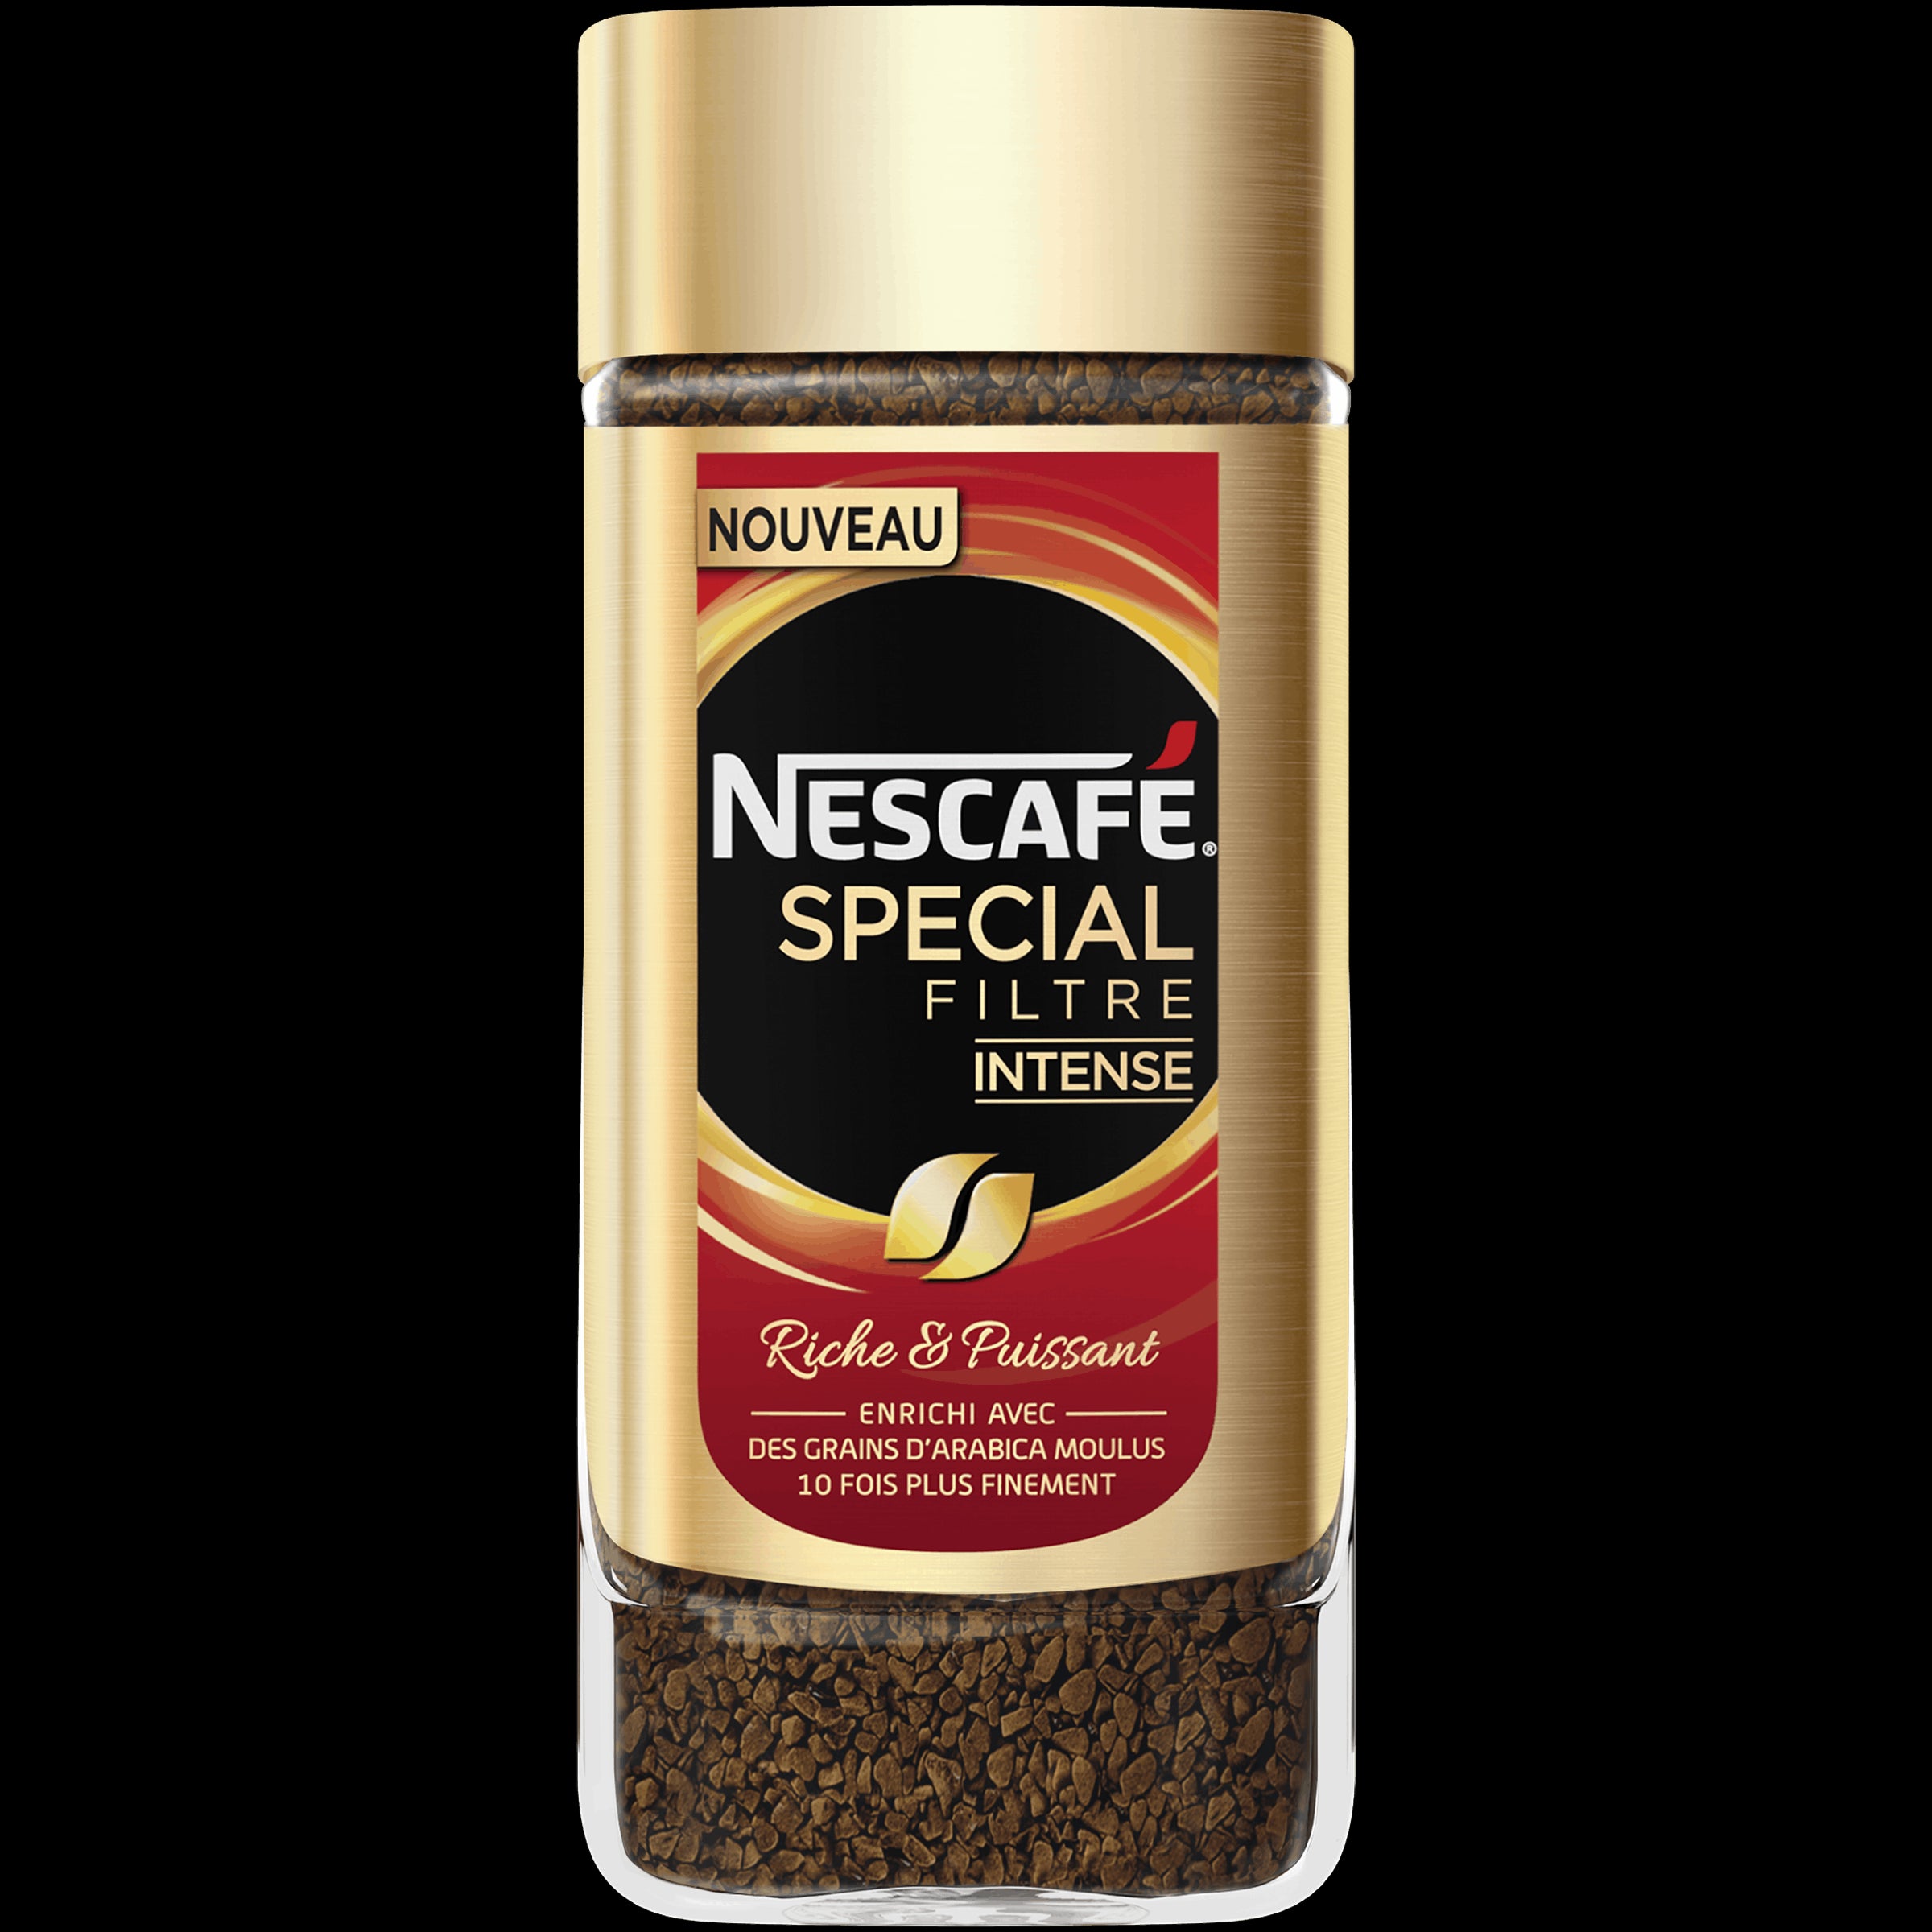 Nescafe Special Intense Filter 100G